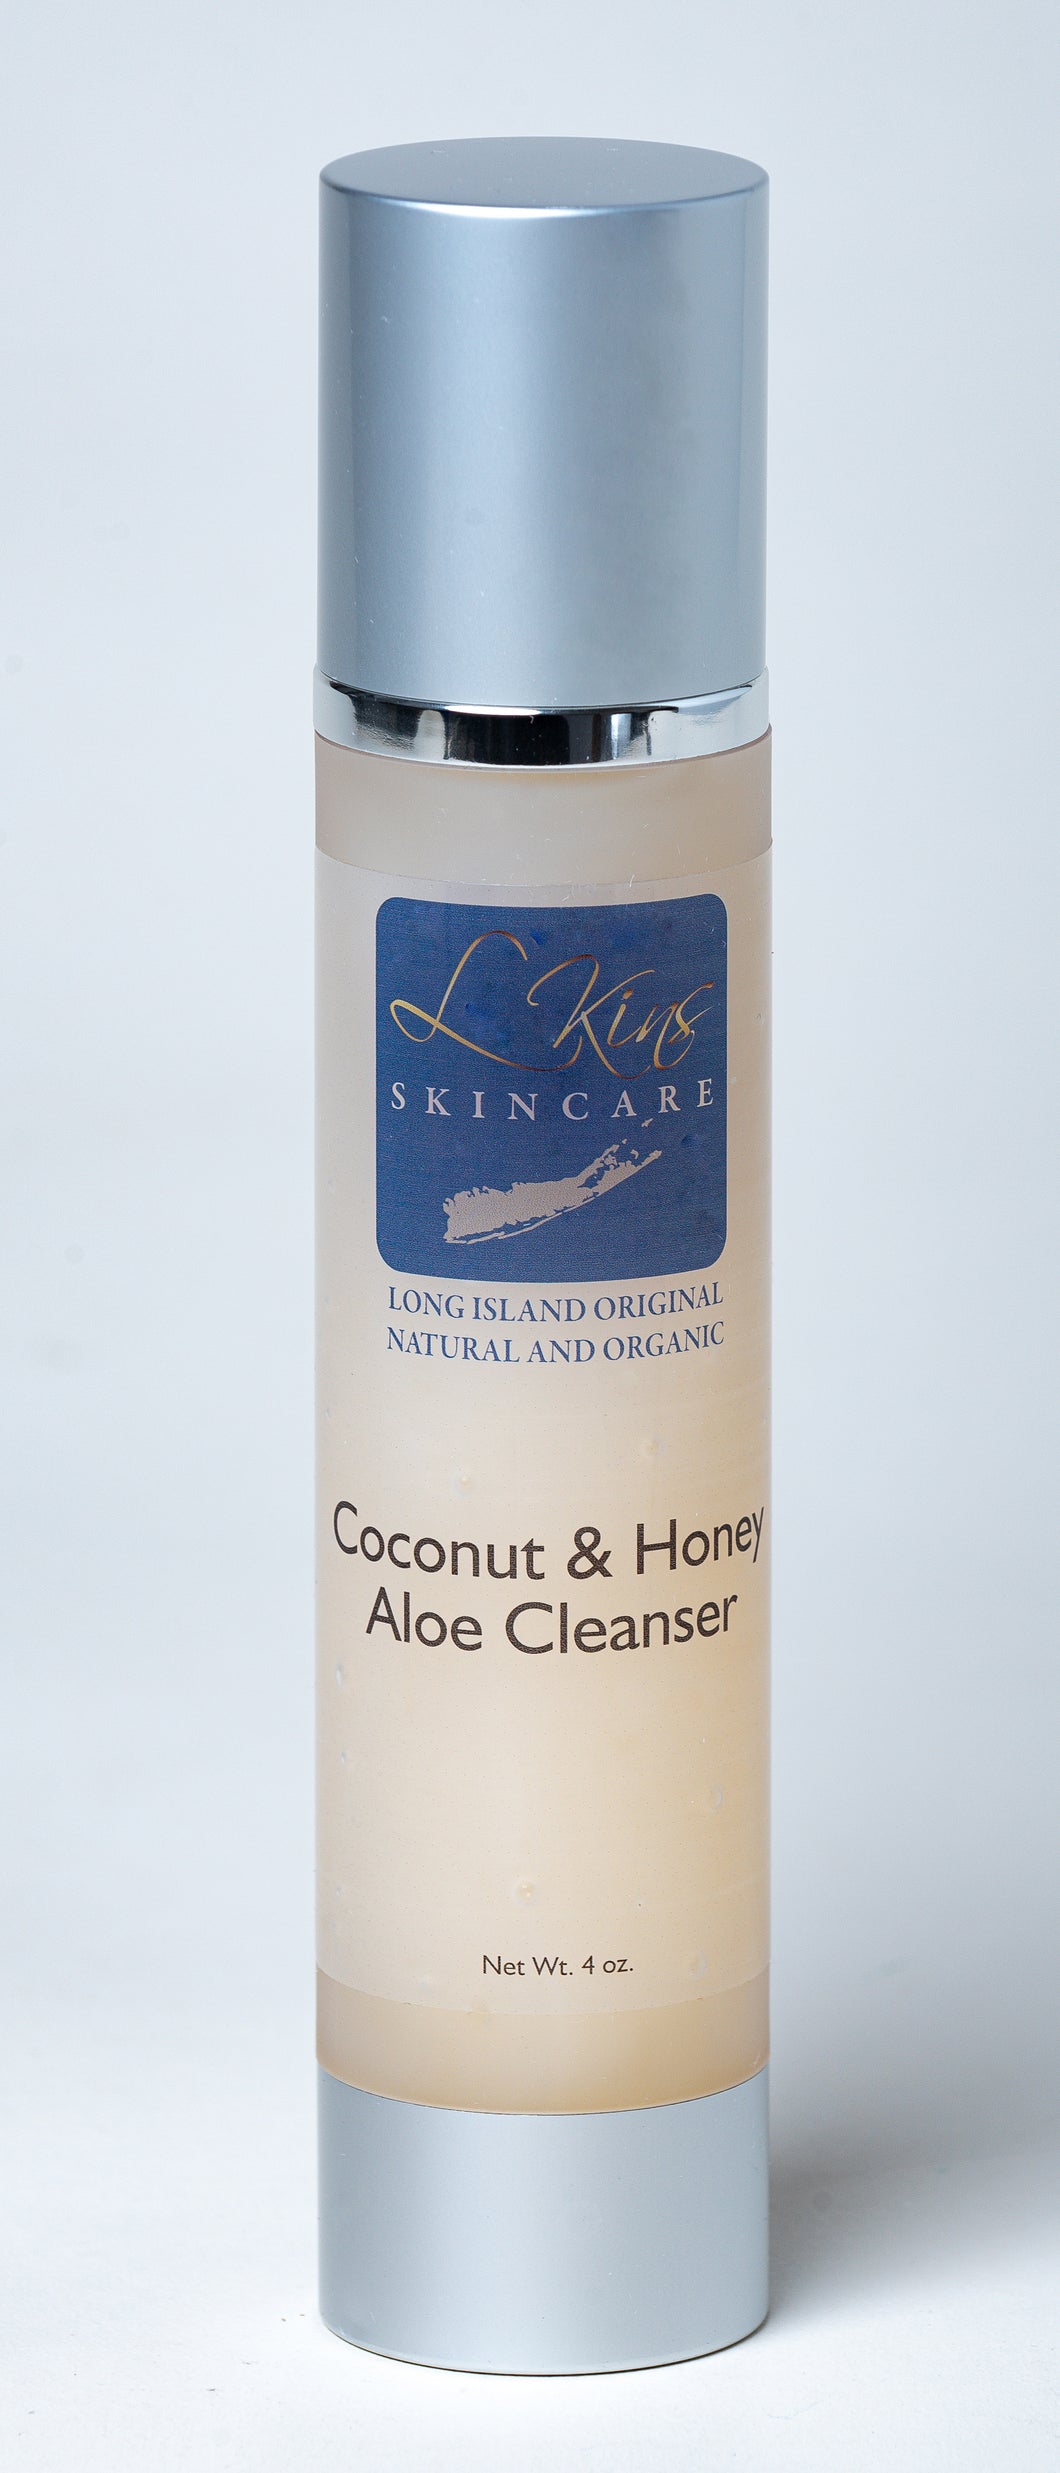 Coconut & Honey Aloe Cleanser